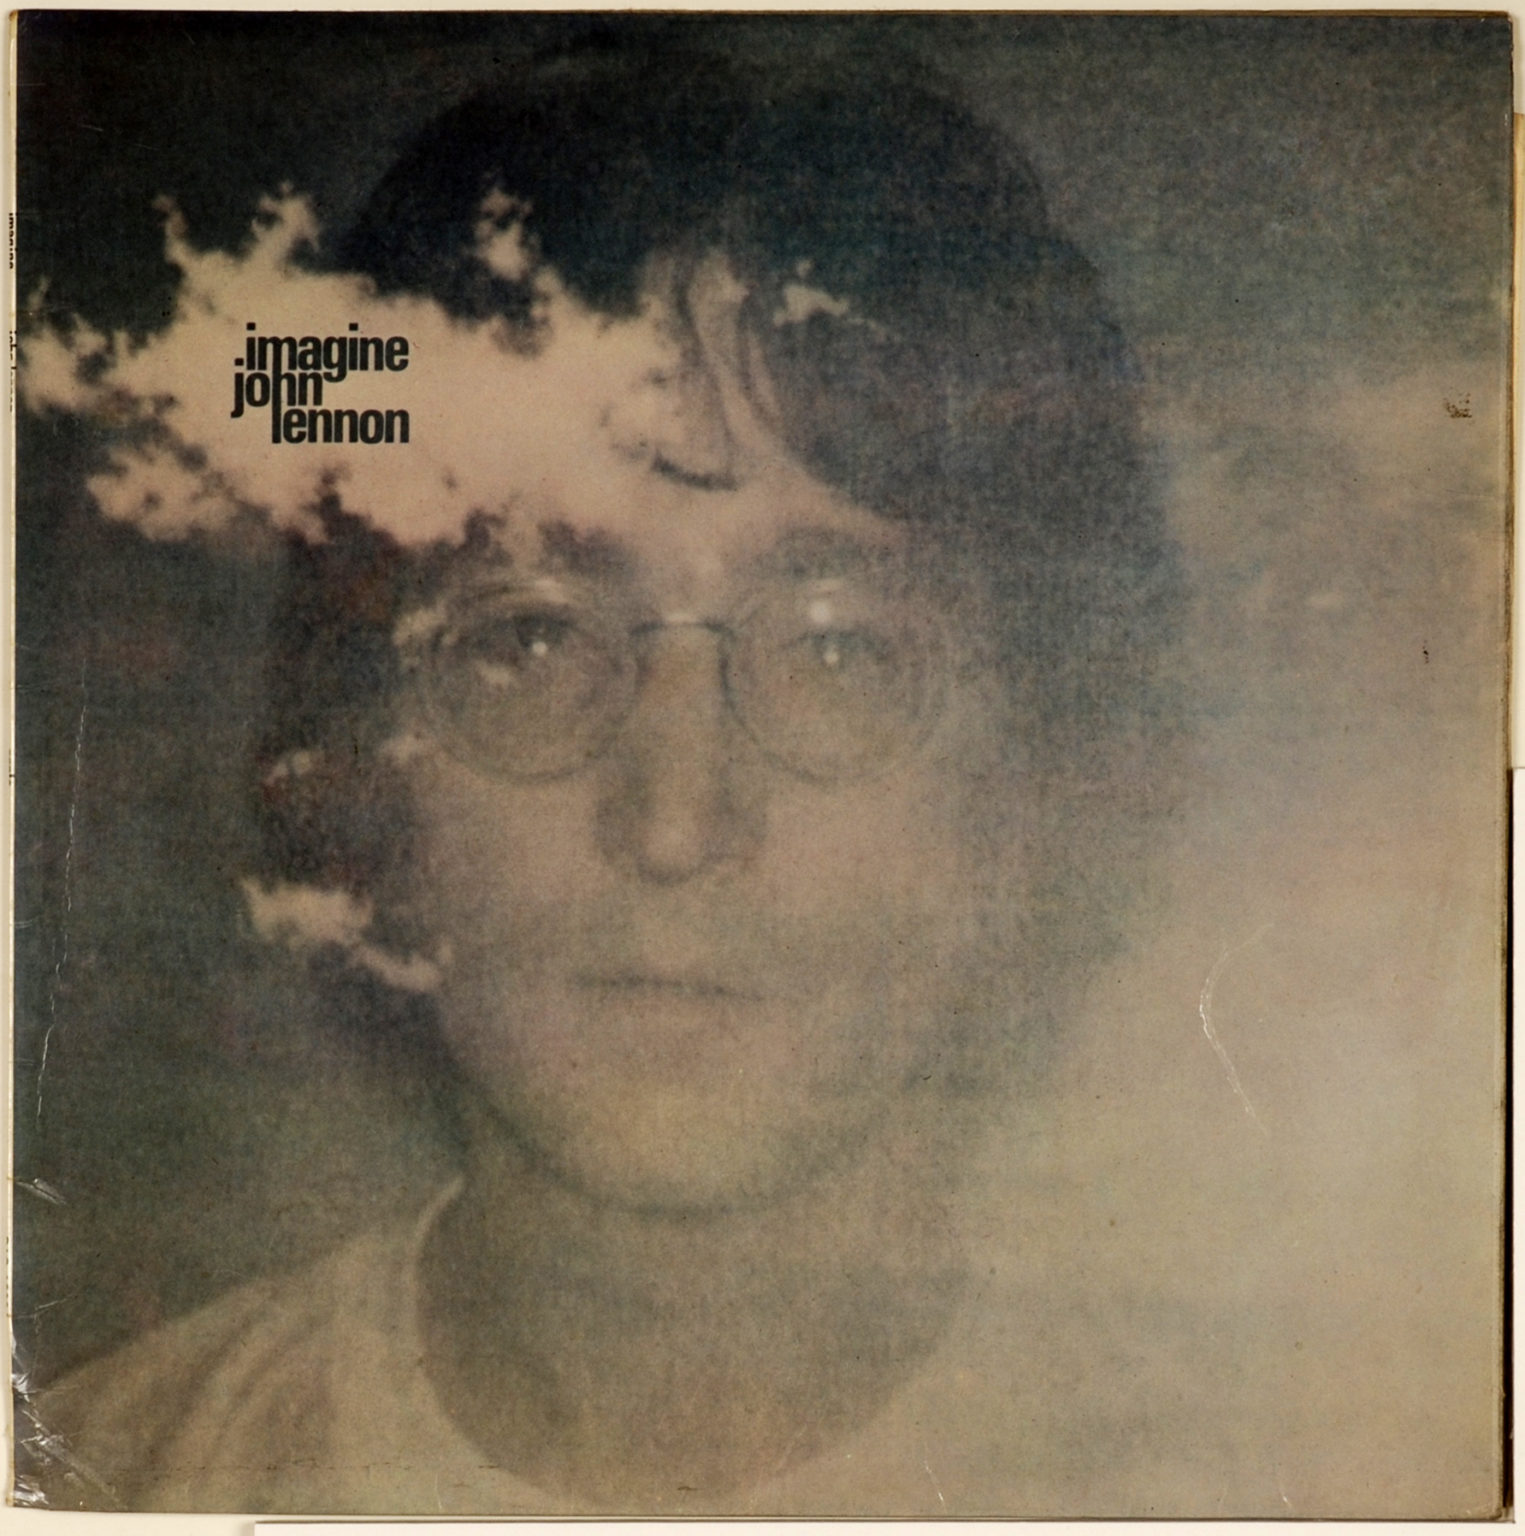 Imagine песня джона леннона. Джон Леннон 1971. John Lennon imagine 1971. John Lennon - 1971 - imagine album. John Lennon imagine обложка.